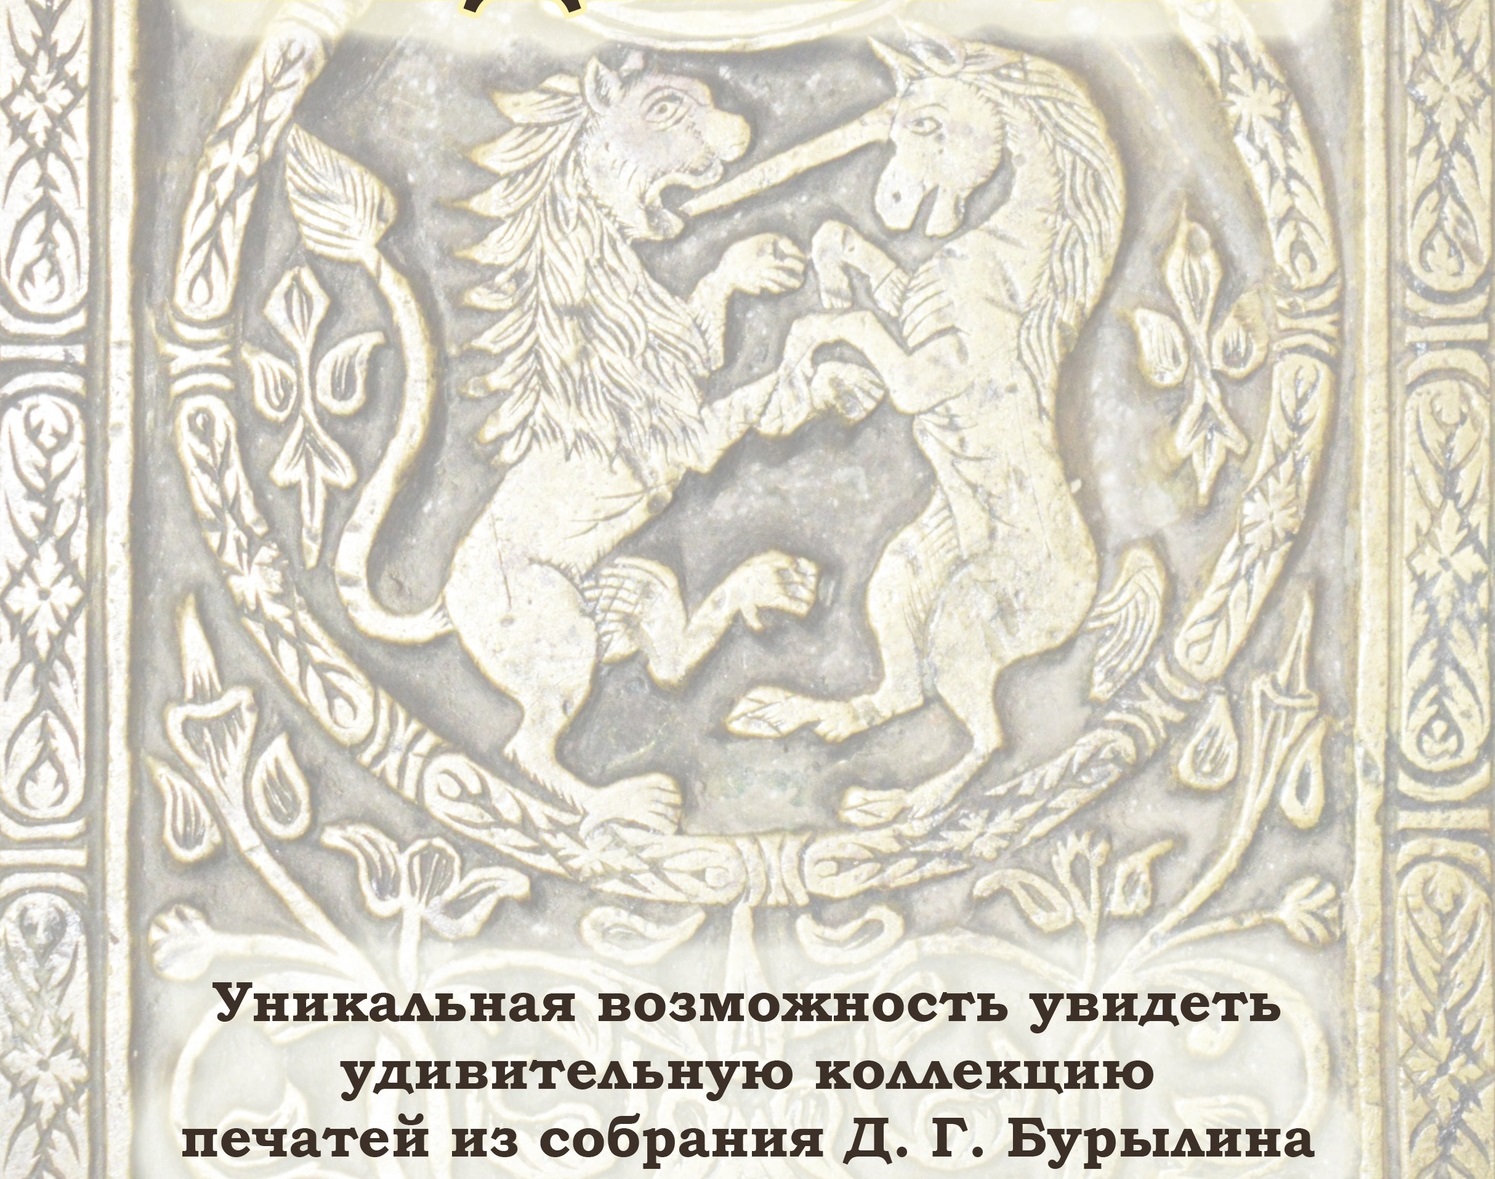 Ивановцев вновь приглашают на удивительное музейное занятие с печатями Бурылина